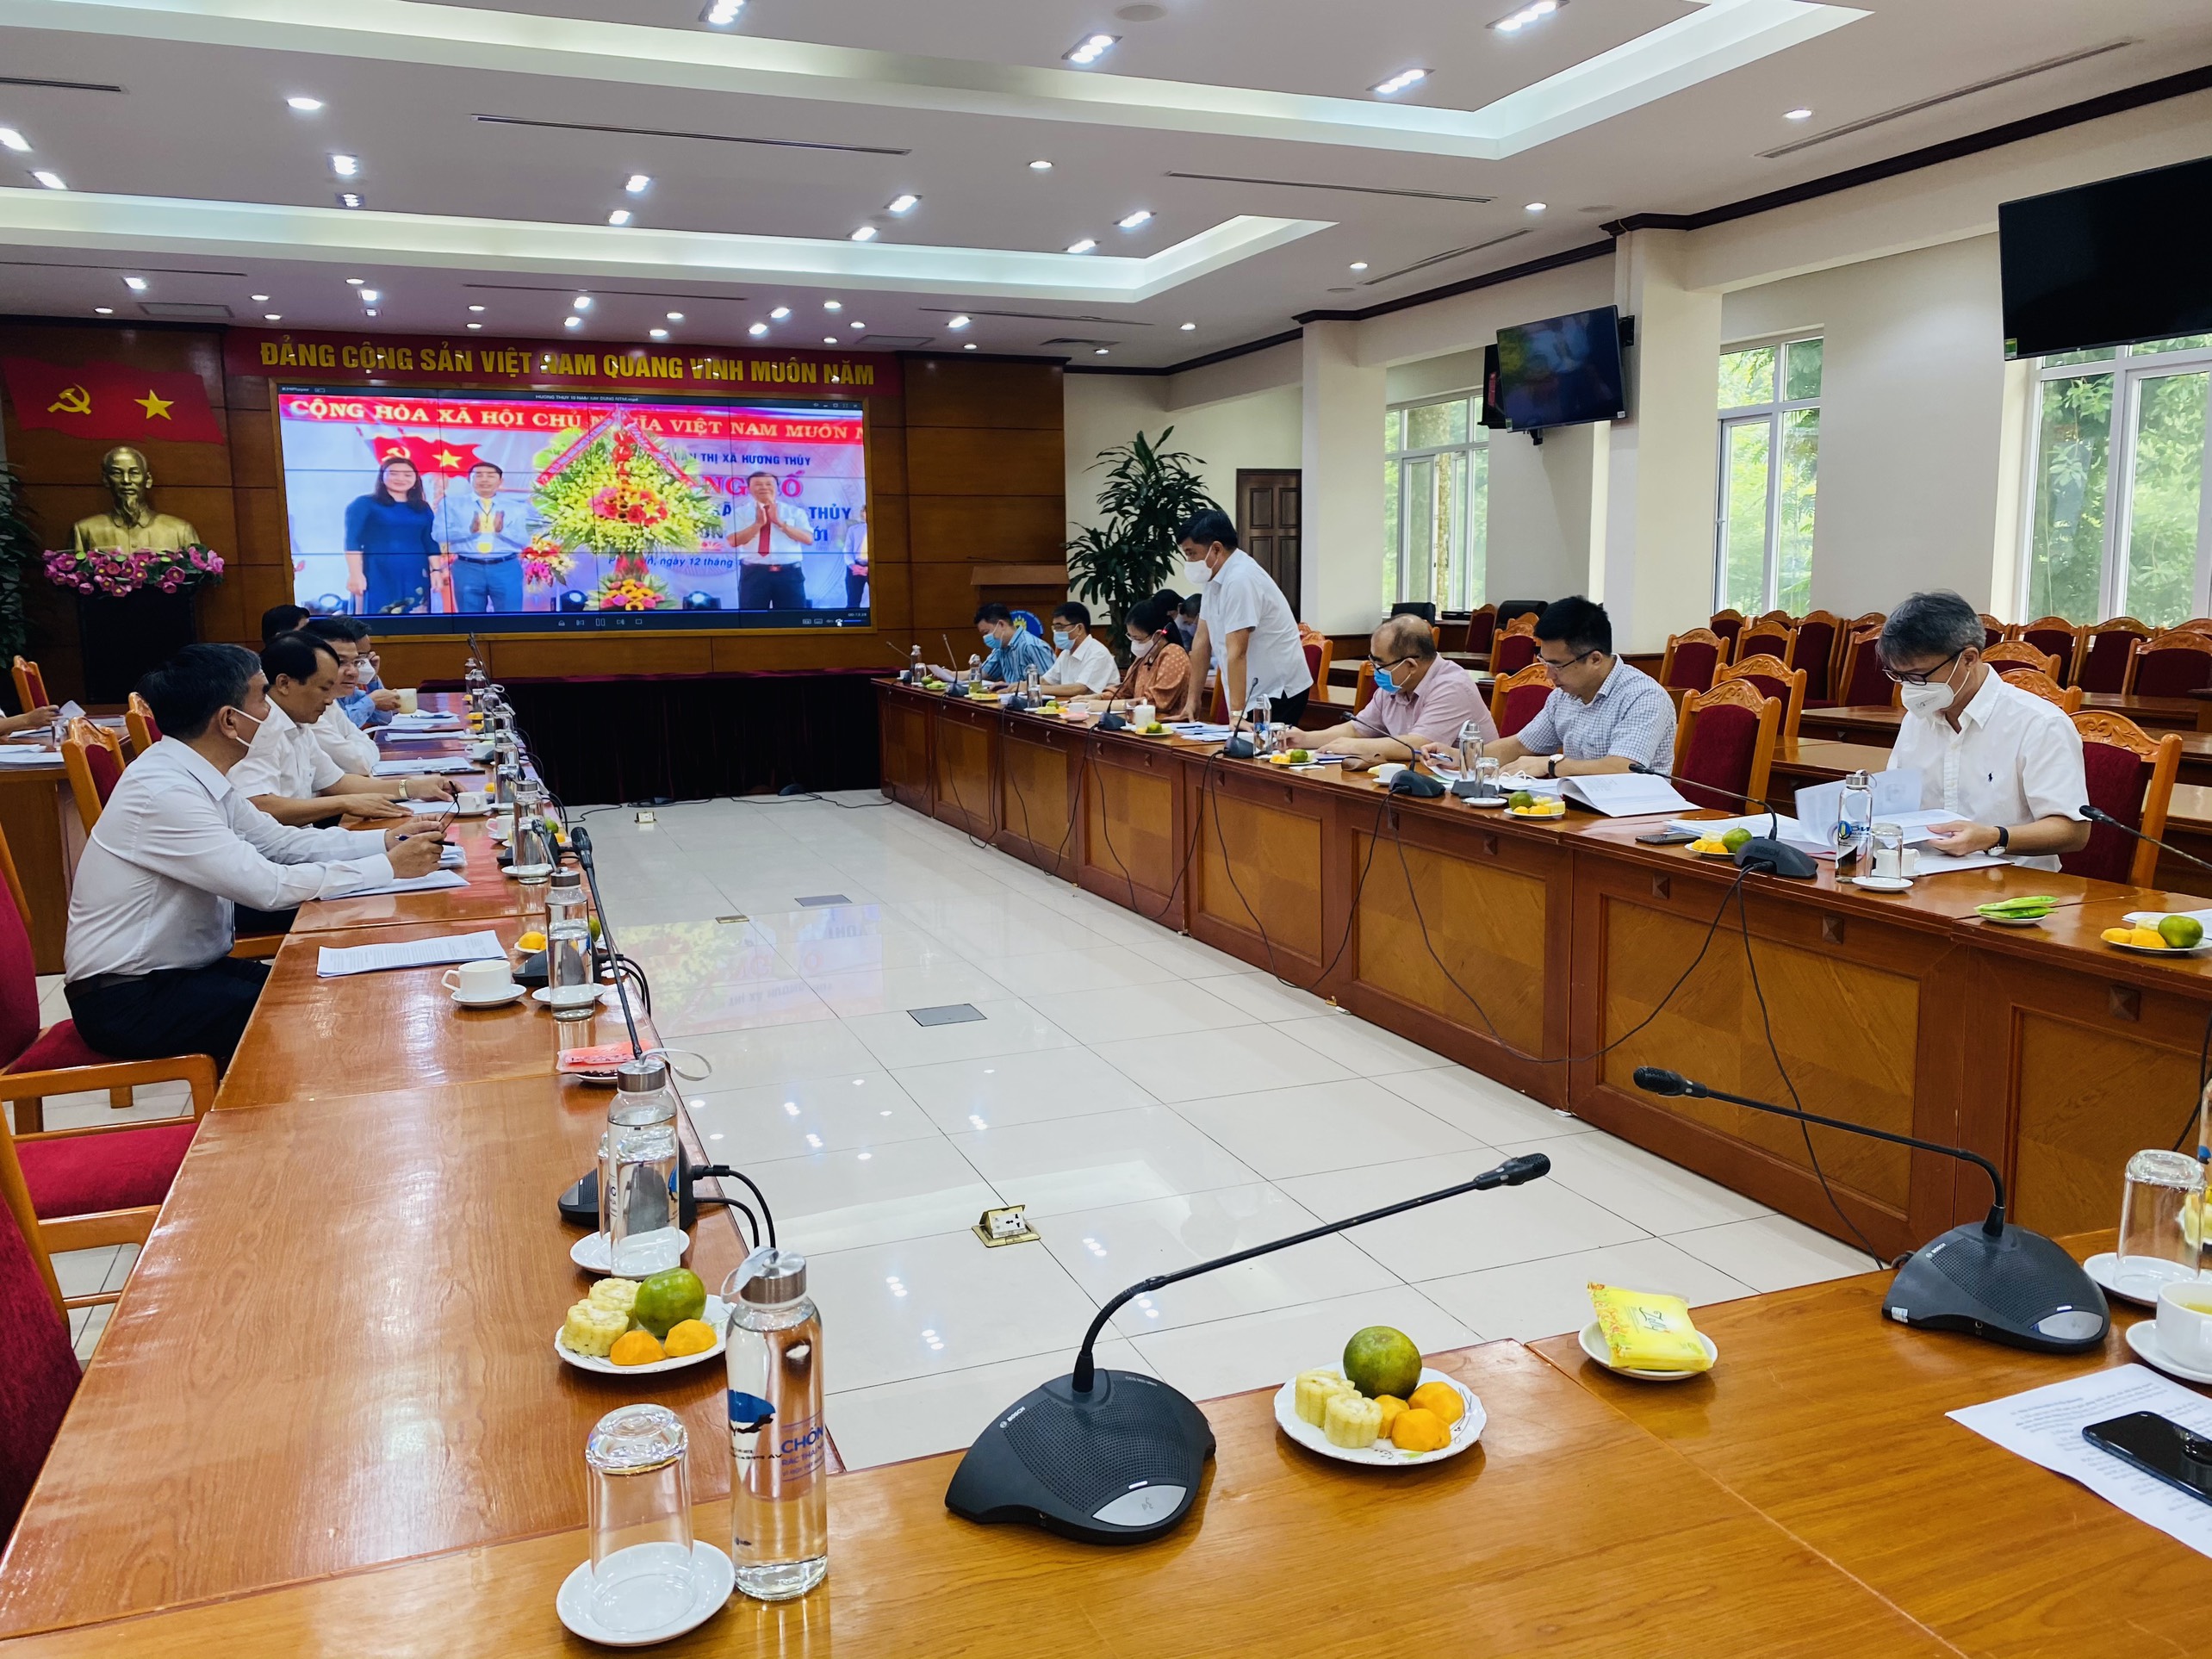 Thị xã Hương Thủy – địa phương cấp huyện đầu tiên của tỉnh Thừa Thiên - Huế được công nhận hoàn thành nhiệm vụ xây dựng NTM.